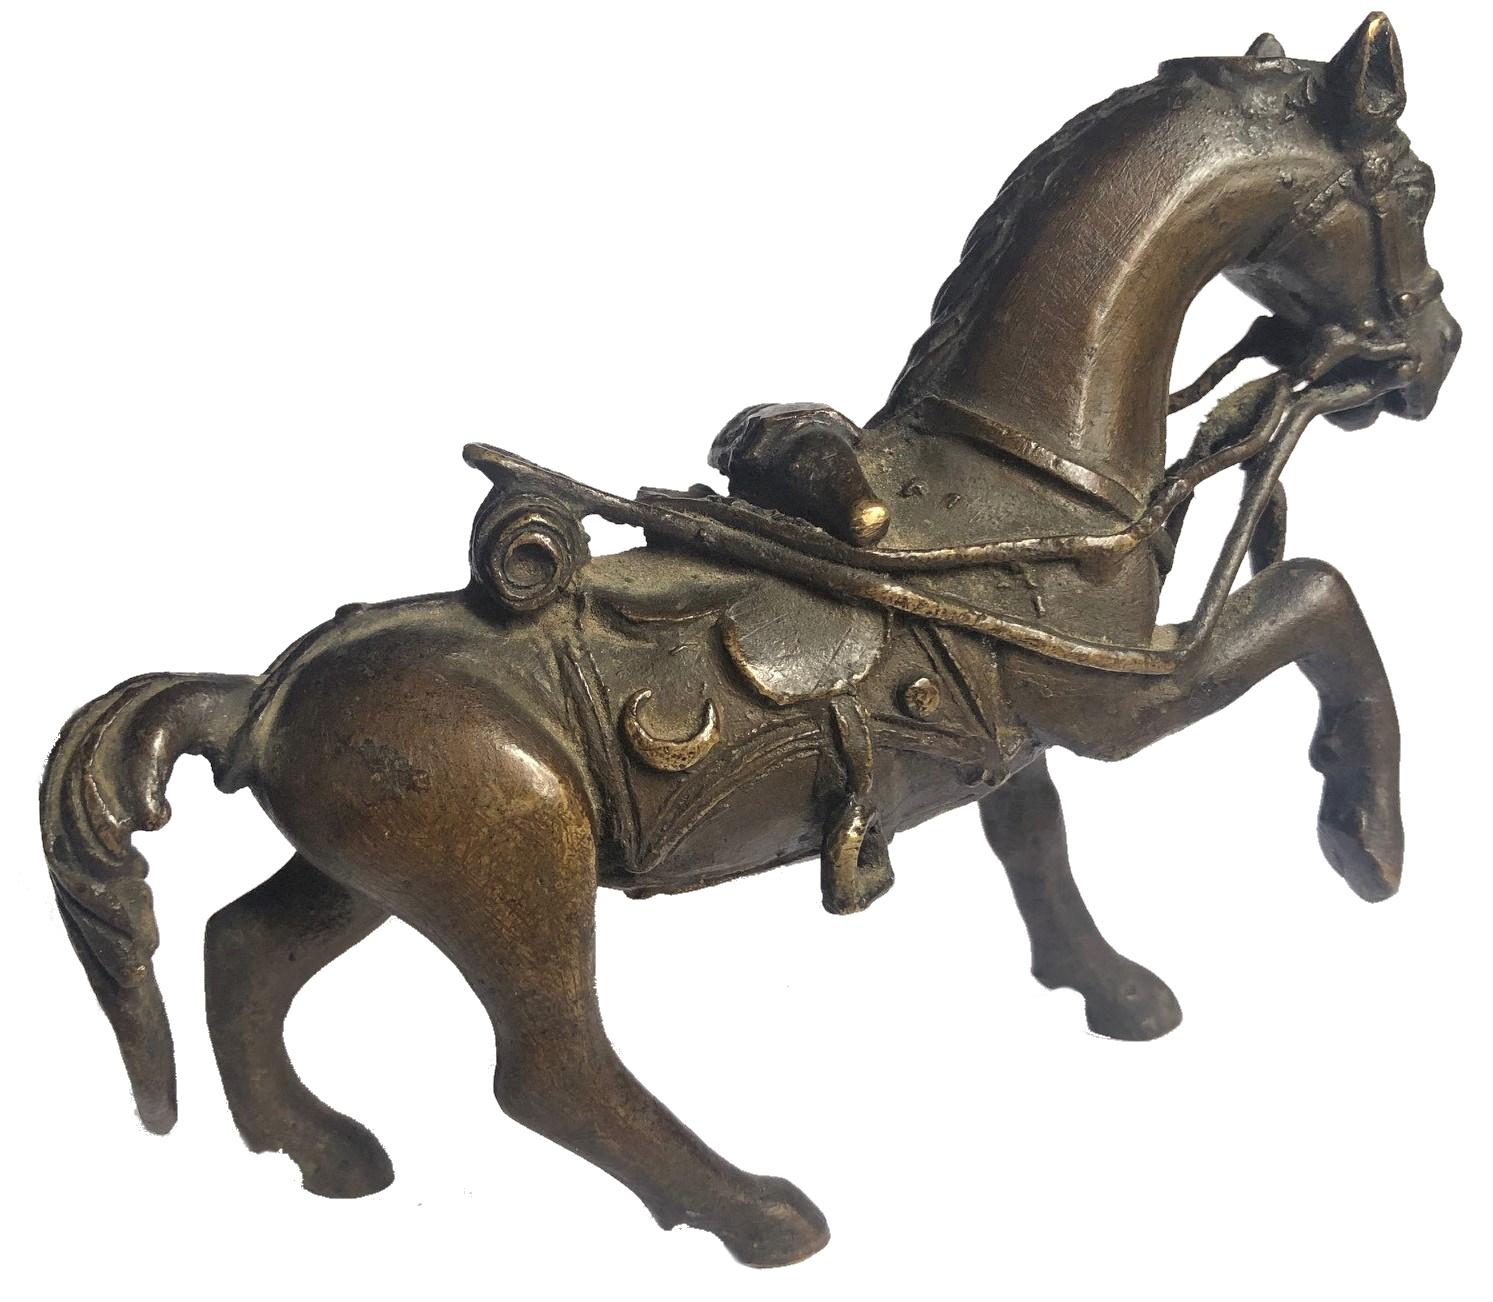 Diese kleine antike tibetische Reiterfigur zeichnet sich nicht nur durch die bemerkenswert detaillierte Skulptur eines Pferdes in einem kompletten Geschirr aus, sondern auch durch die hohe Qualität des Bronzegusses und seine originale dunkelbraune